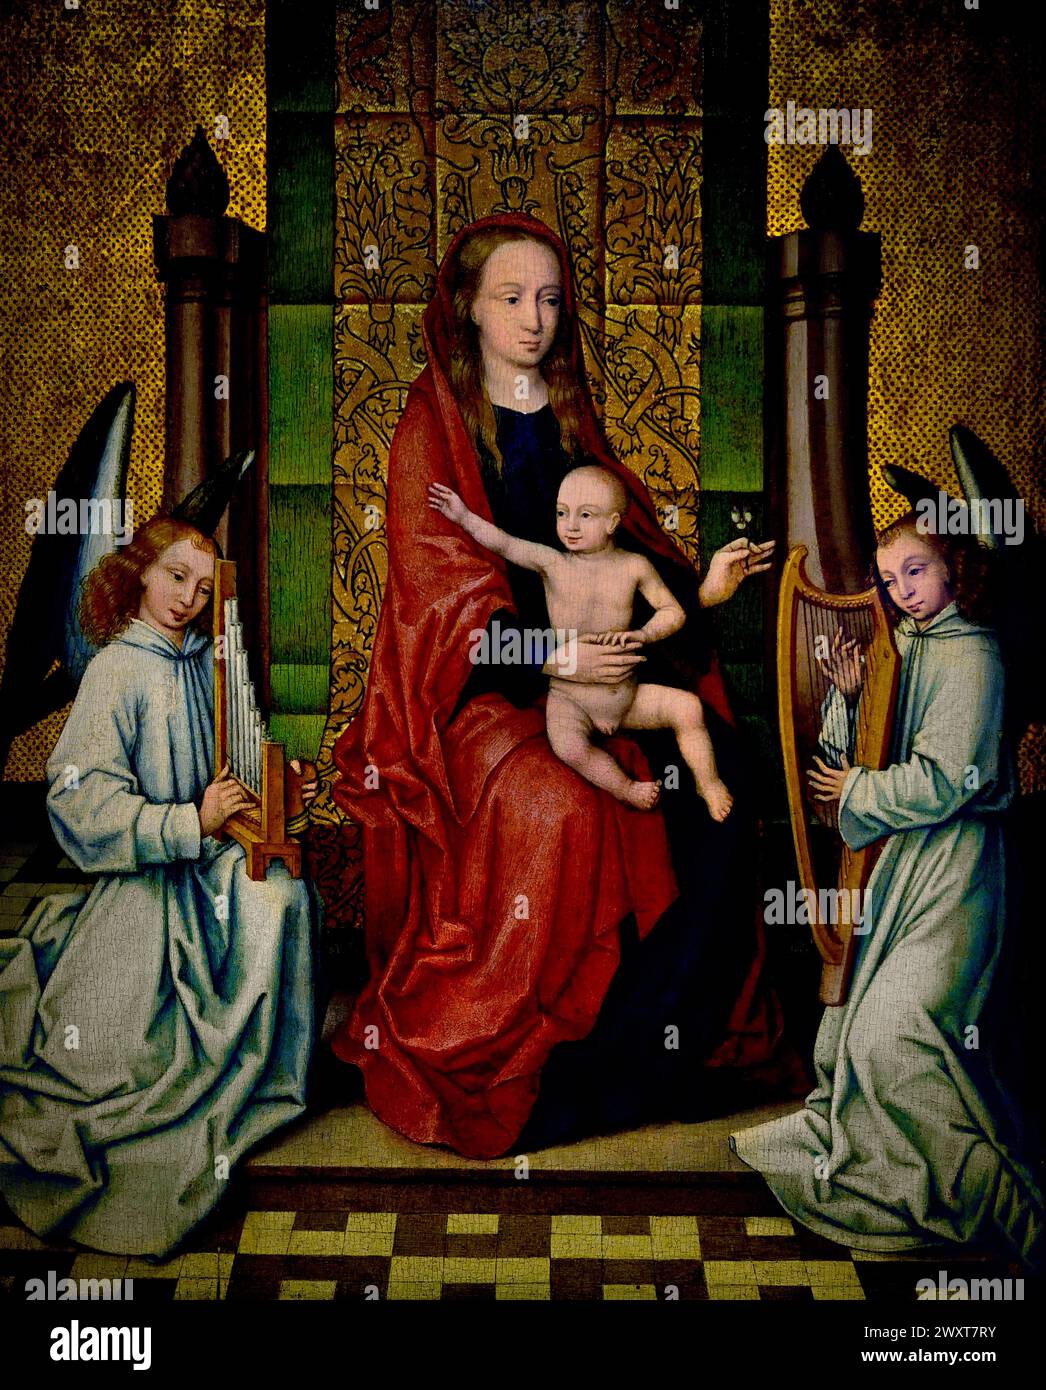 Maria mit Kind, thront von Marcellus Coffermans 1550 - 1574 Museum Mayer van den Bergh, Antwerpen, Belgien, Belgien. Stockfoto